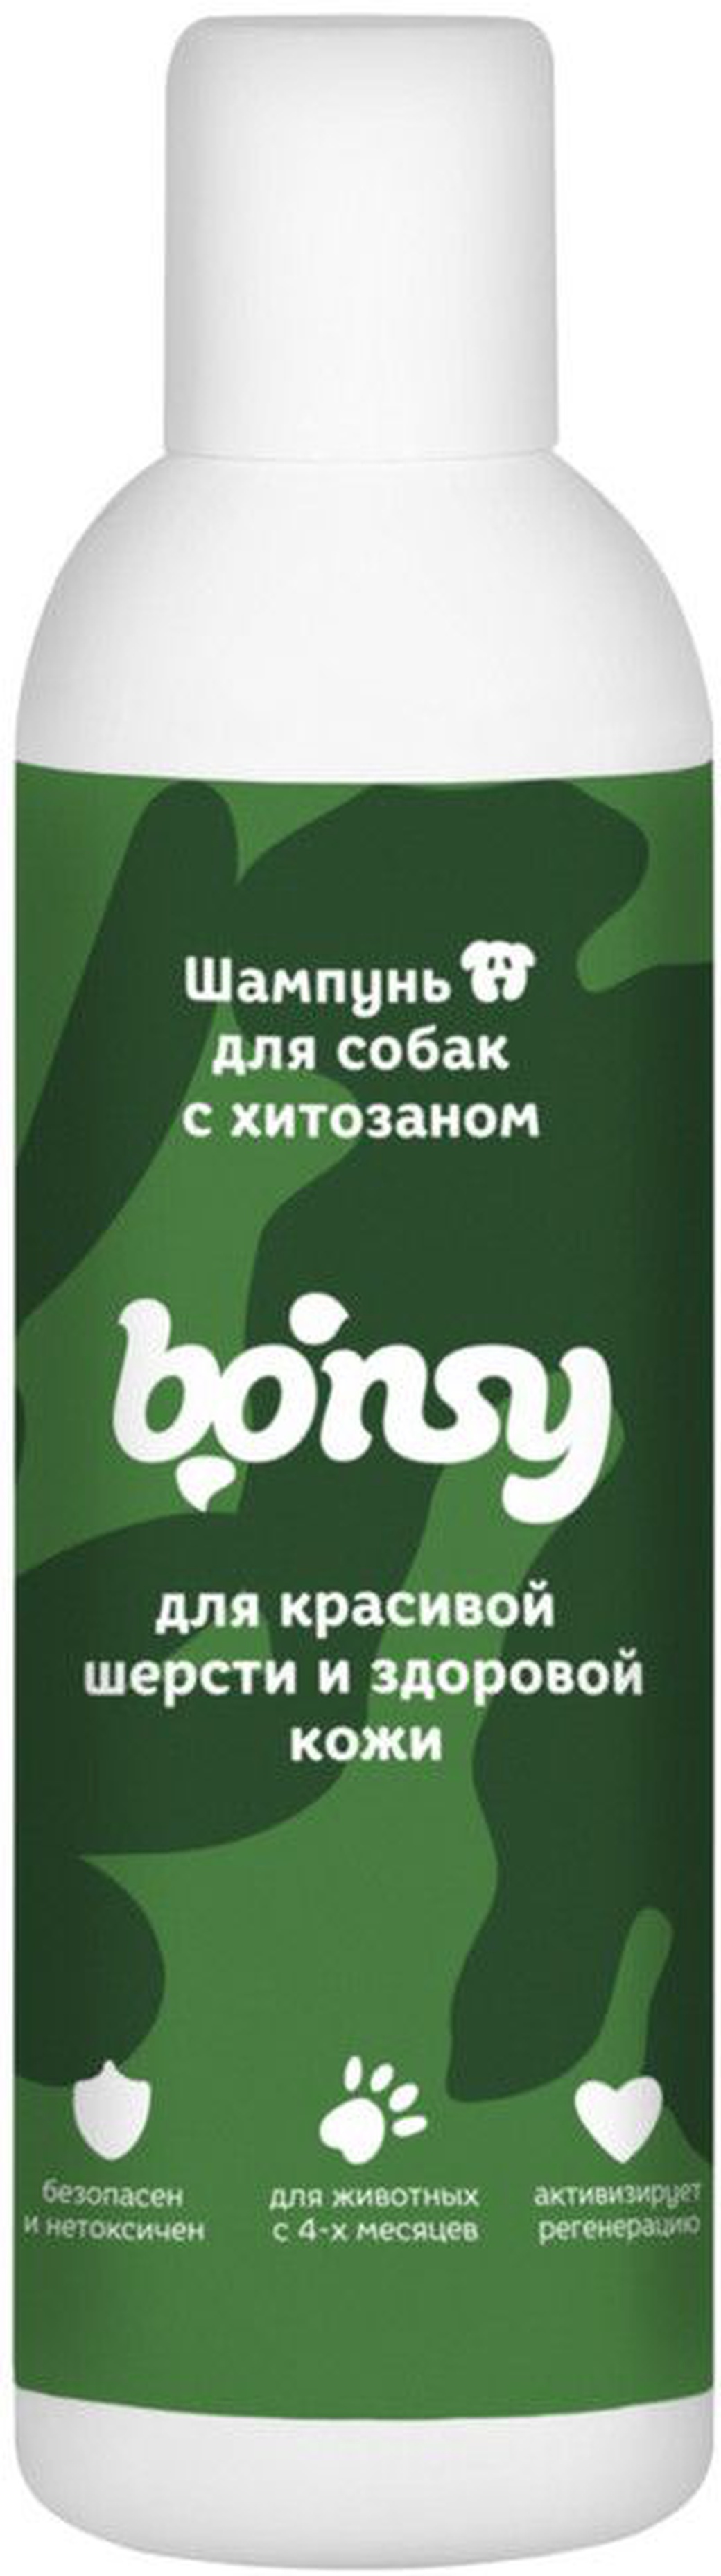 Шампунь Bonsy с хитозаном для красивой шерсти и здоровой кожи собак 250 мл фото